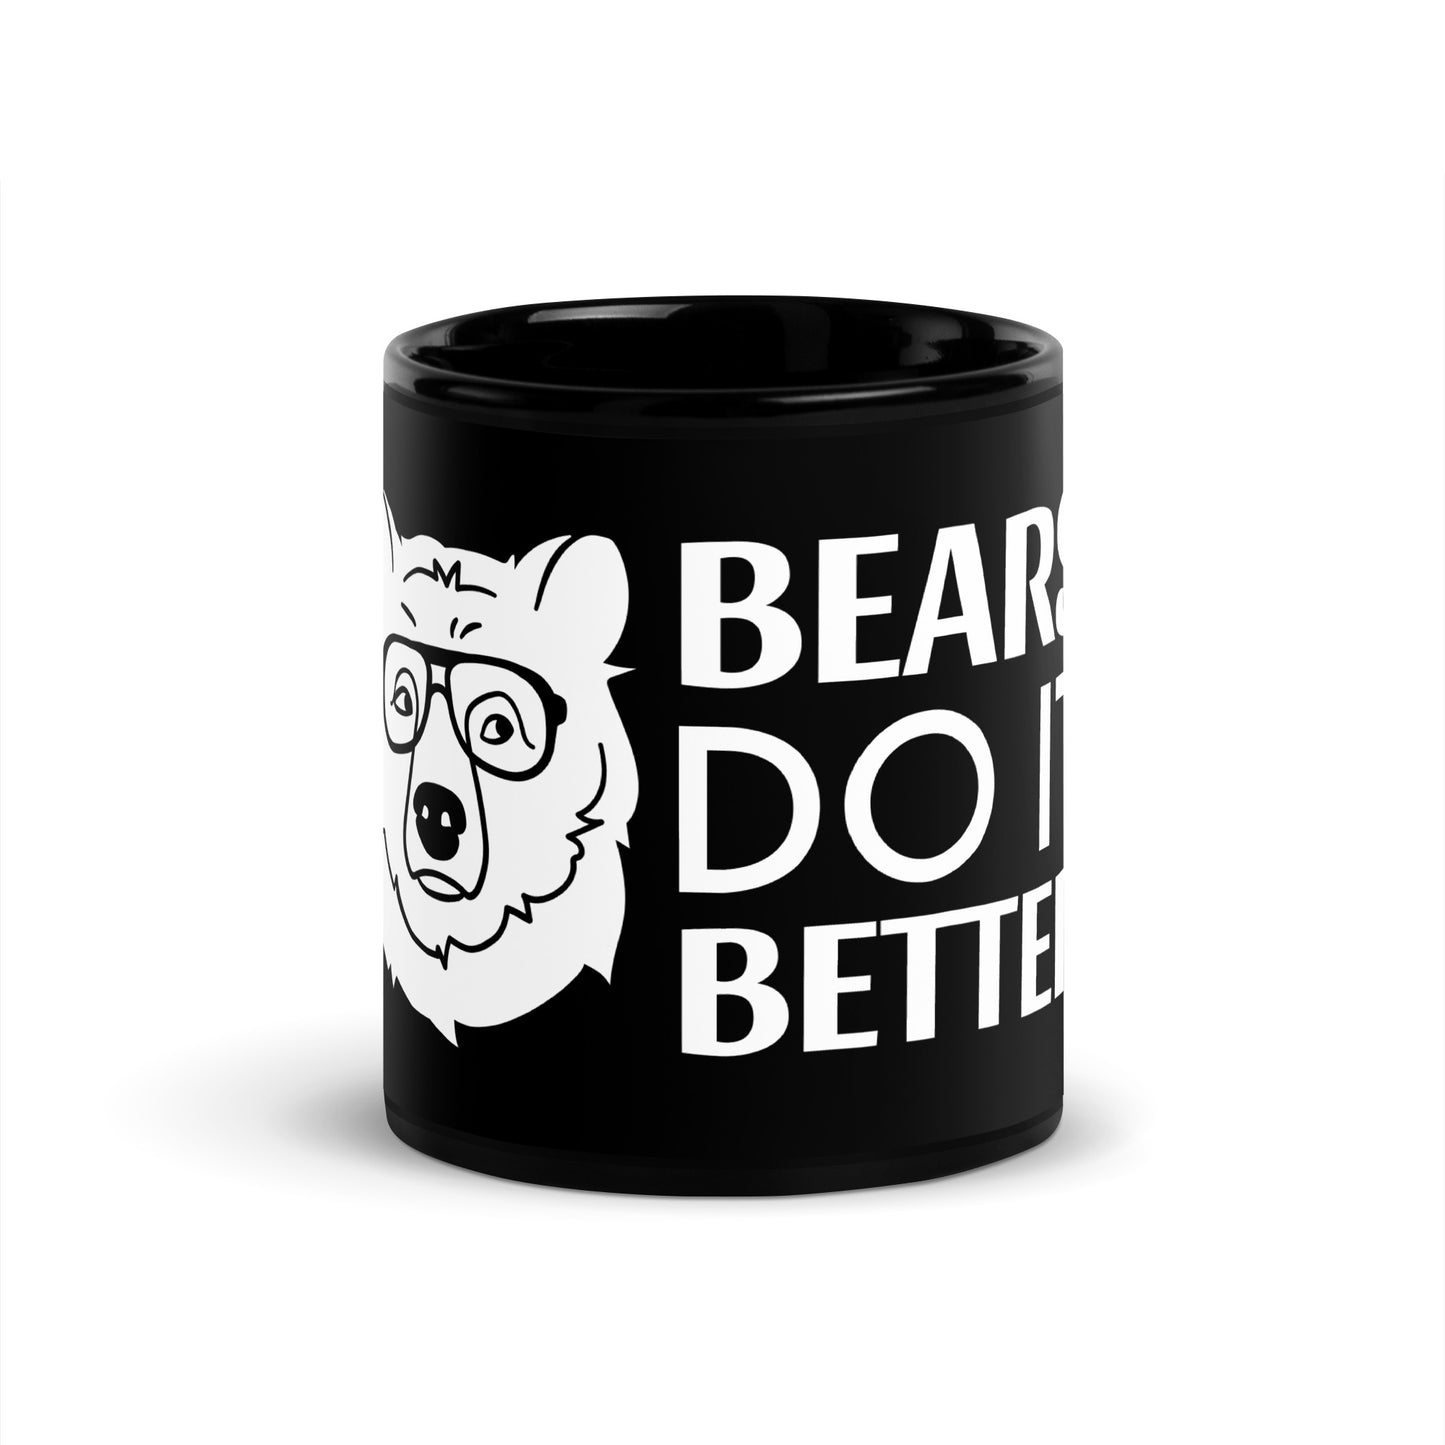 Nerd Meets Curvy "Bears Do It Better" Mug (Black)